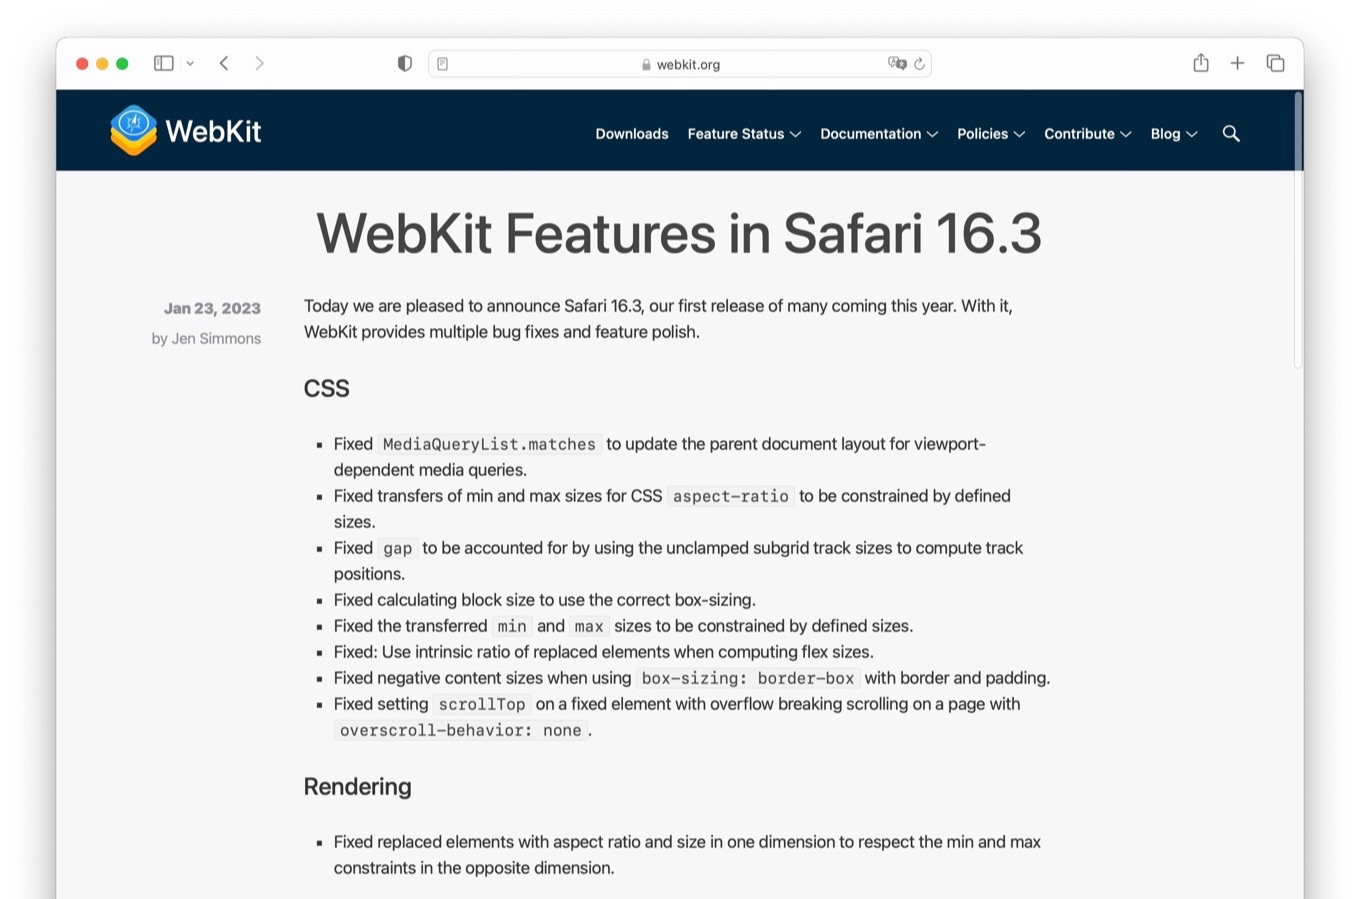 WebKit Features in Safari 16.3